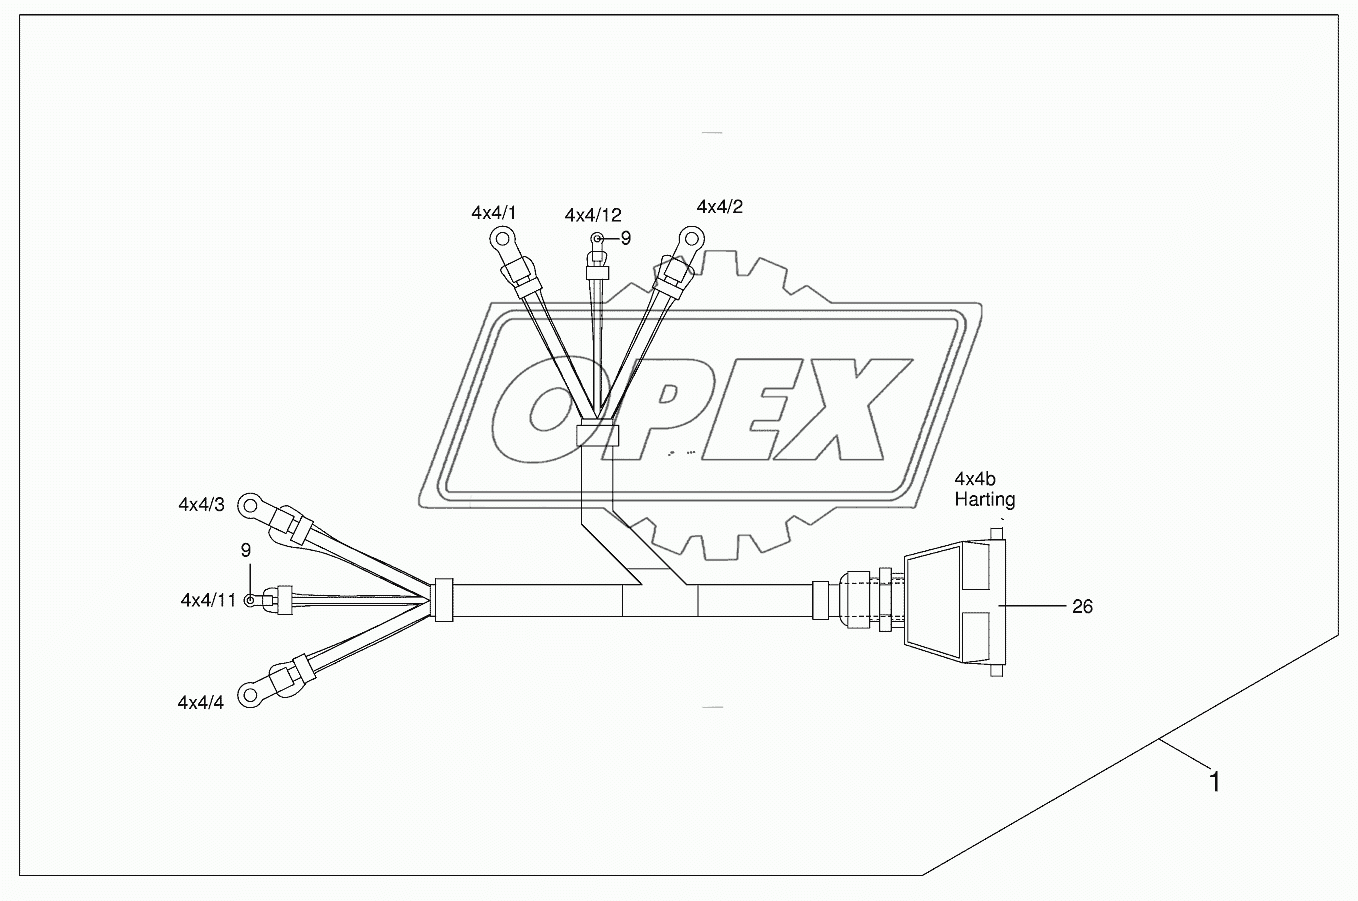 Wiring loom cab (4x4)